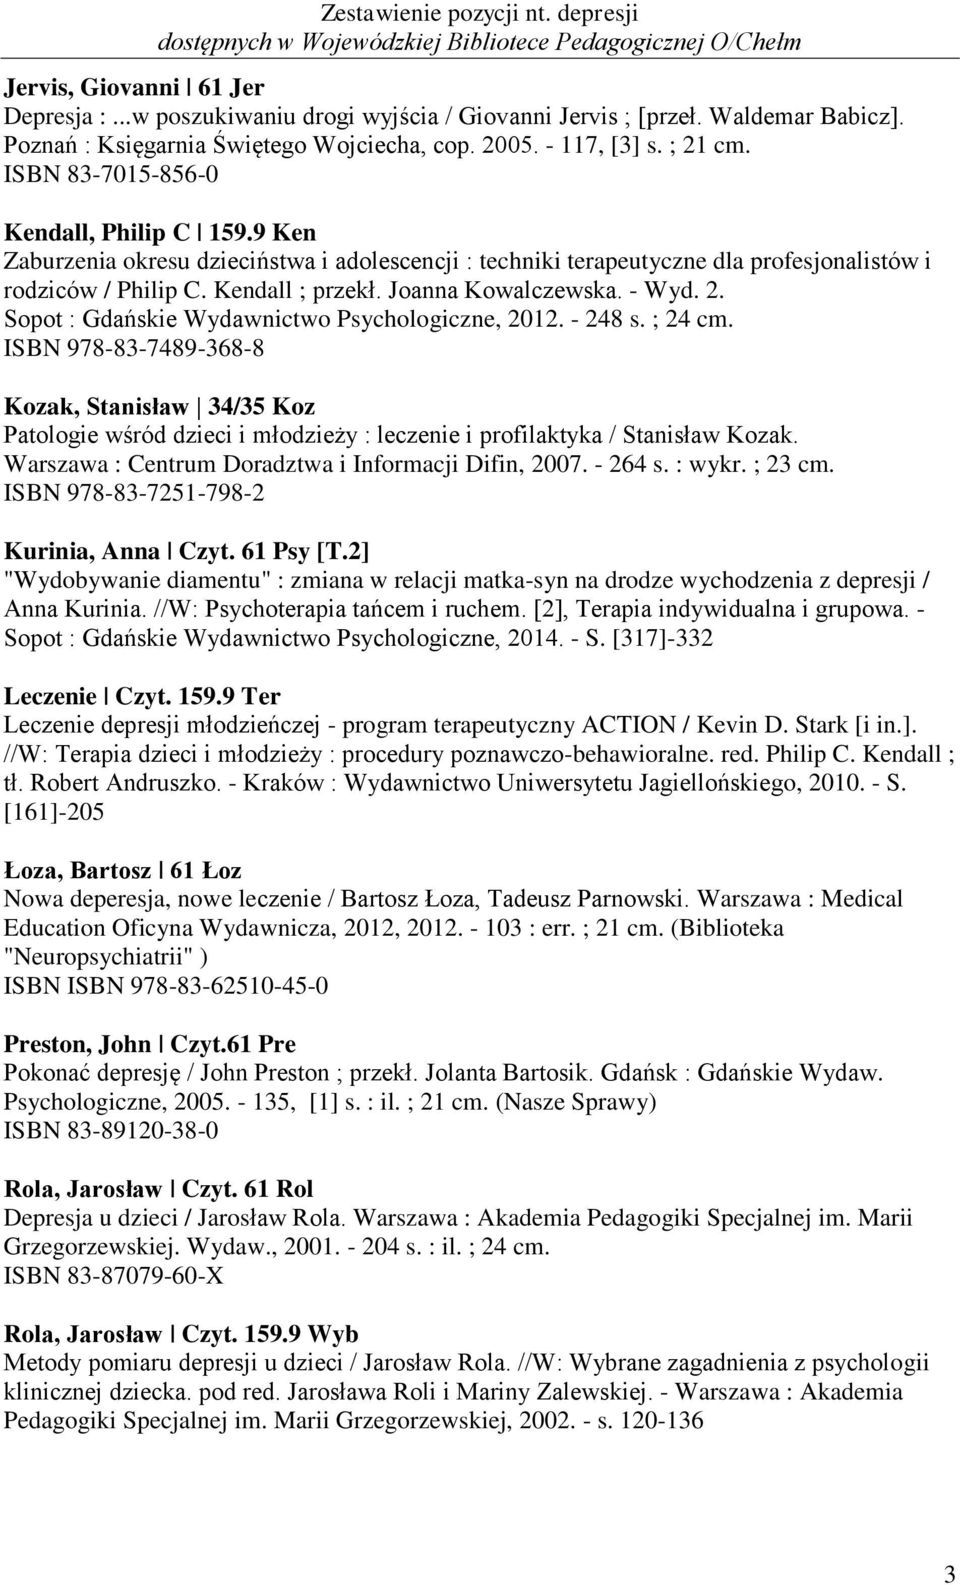 - Wyd. 2. Sopot : Gdańskie Wydawnictwo Psychologiczne, 2012. - 248 s. ; 24 cm.